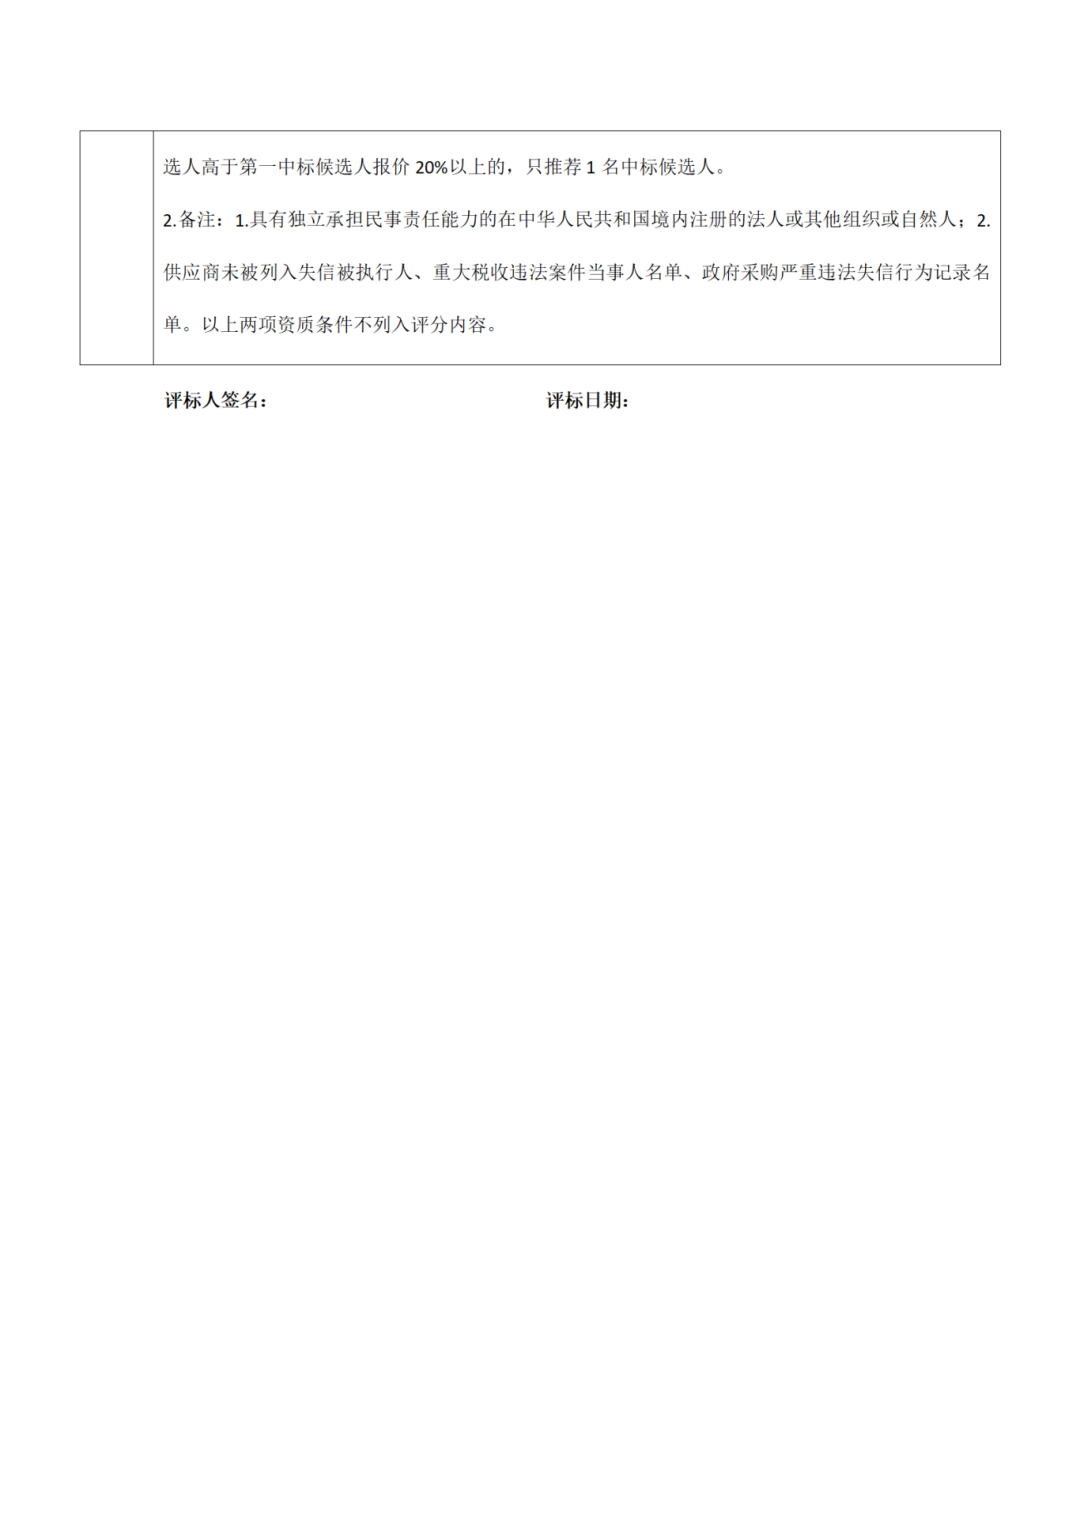 40万元！广州开发区知识产权跨境交易运营项目招标